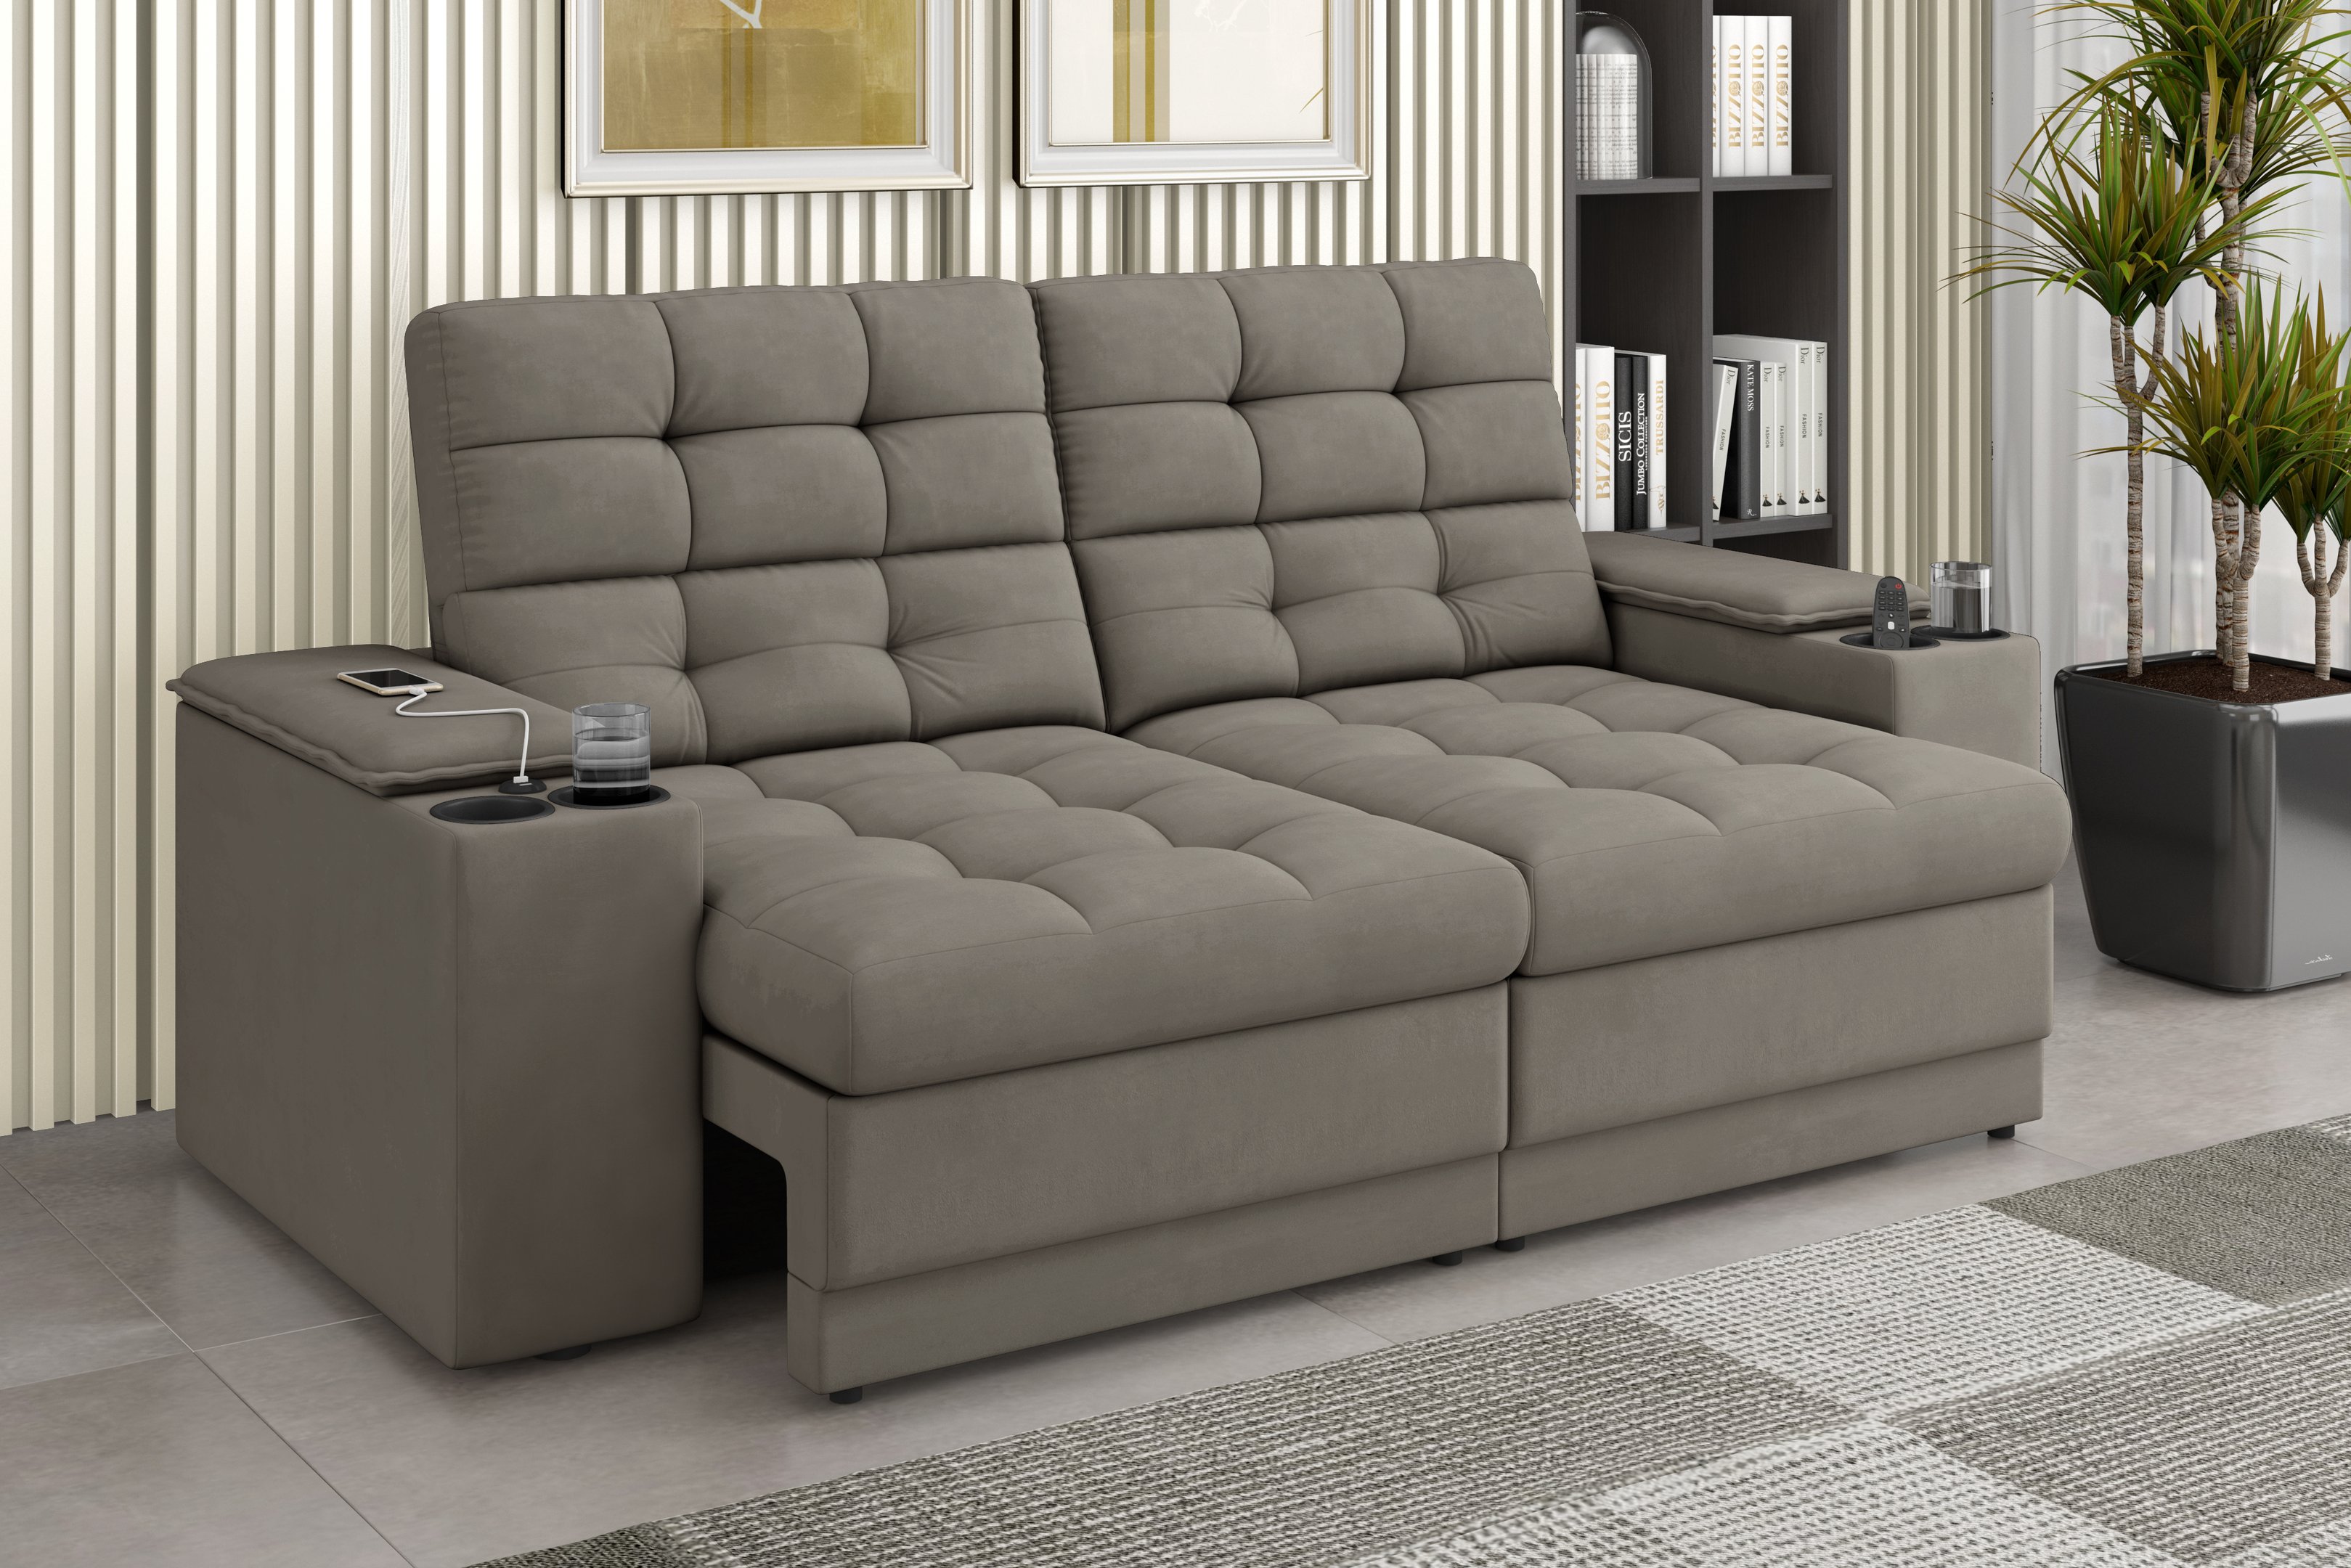 Sofá Confort Premium 2,05m Assento Retrátil/reclinável Porta Copos e Usb Suede Capuccino - Xflex - 1